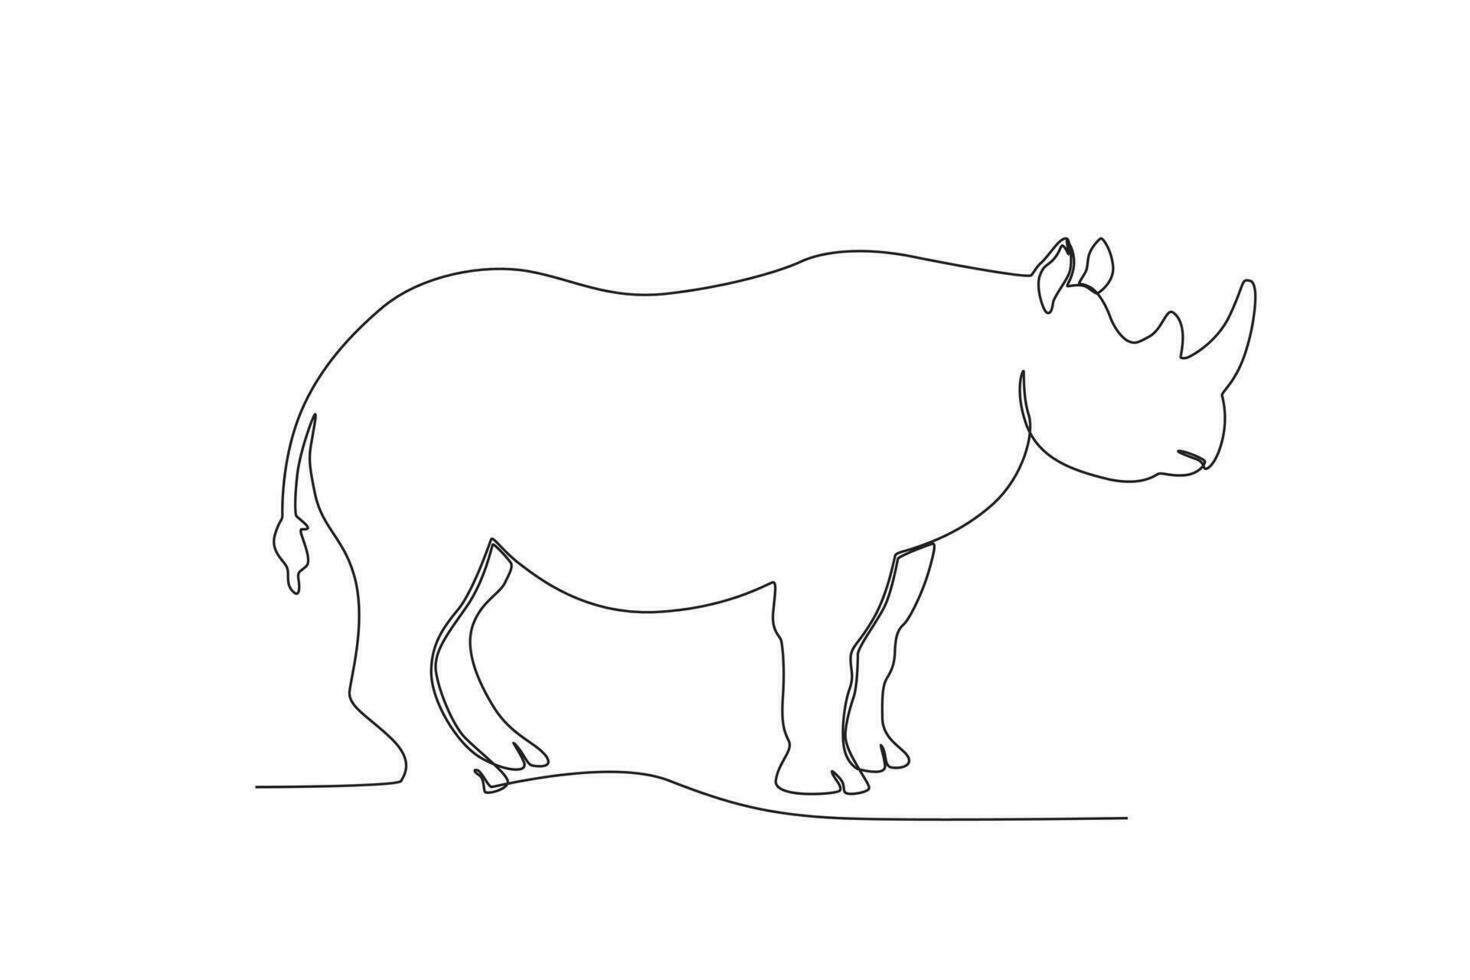 singolo uno linea disegno di un' rinoceronte. continuo linea disegnare design grafico vettore illustrazione.